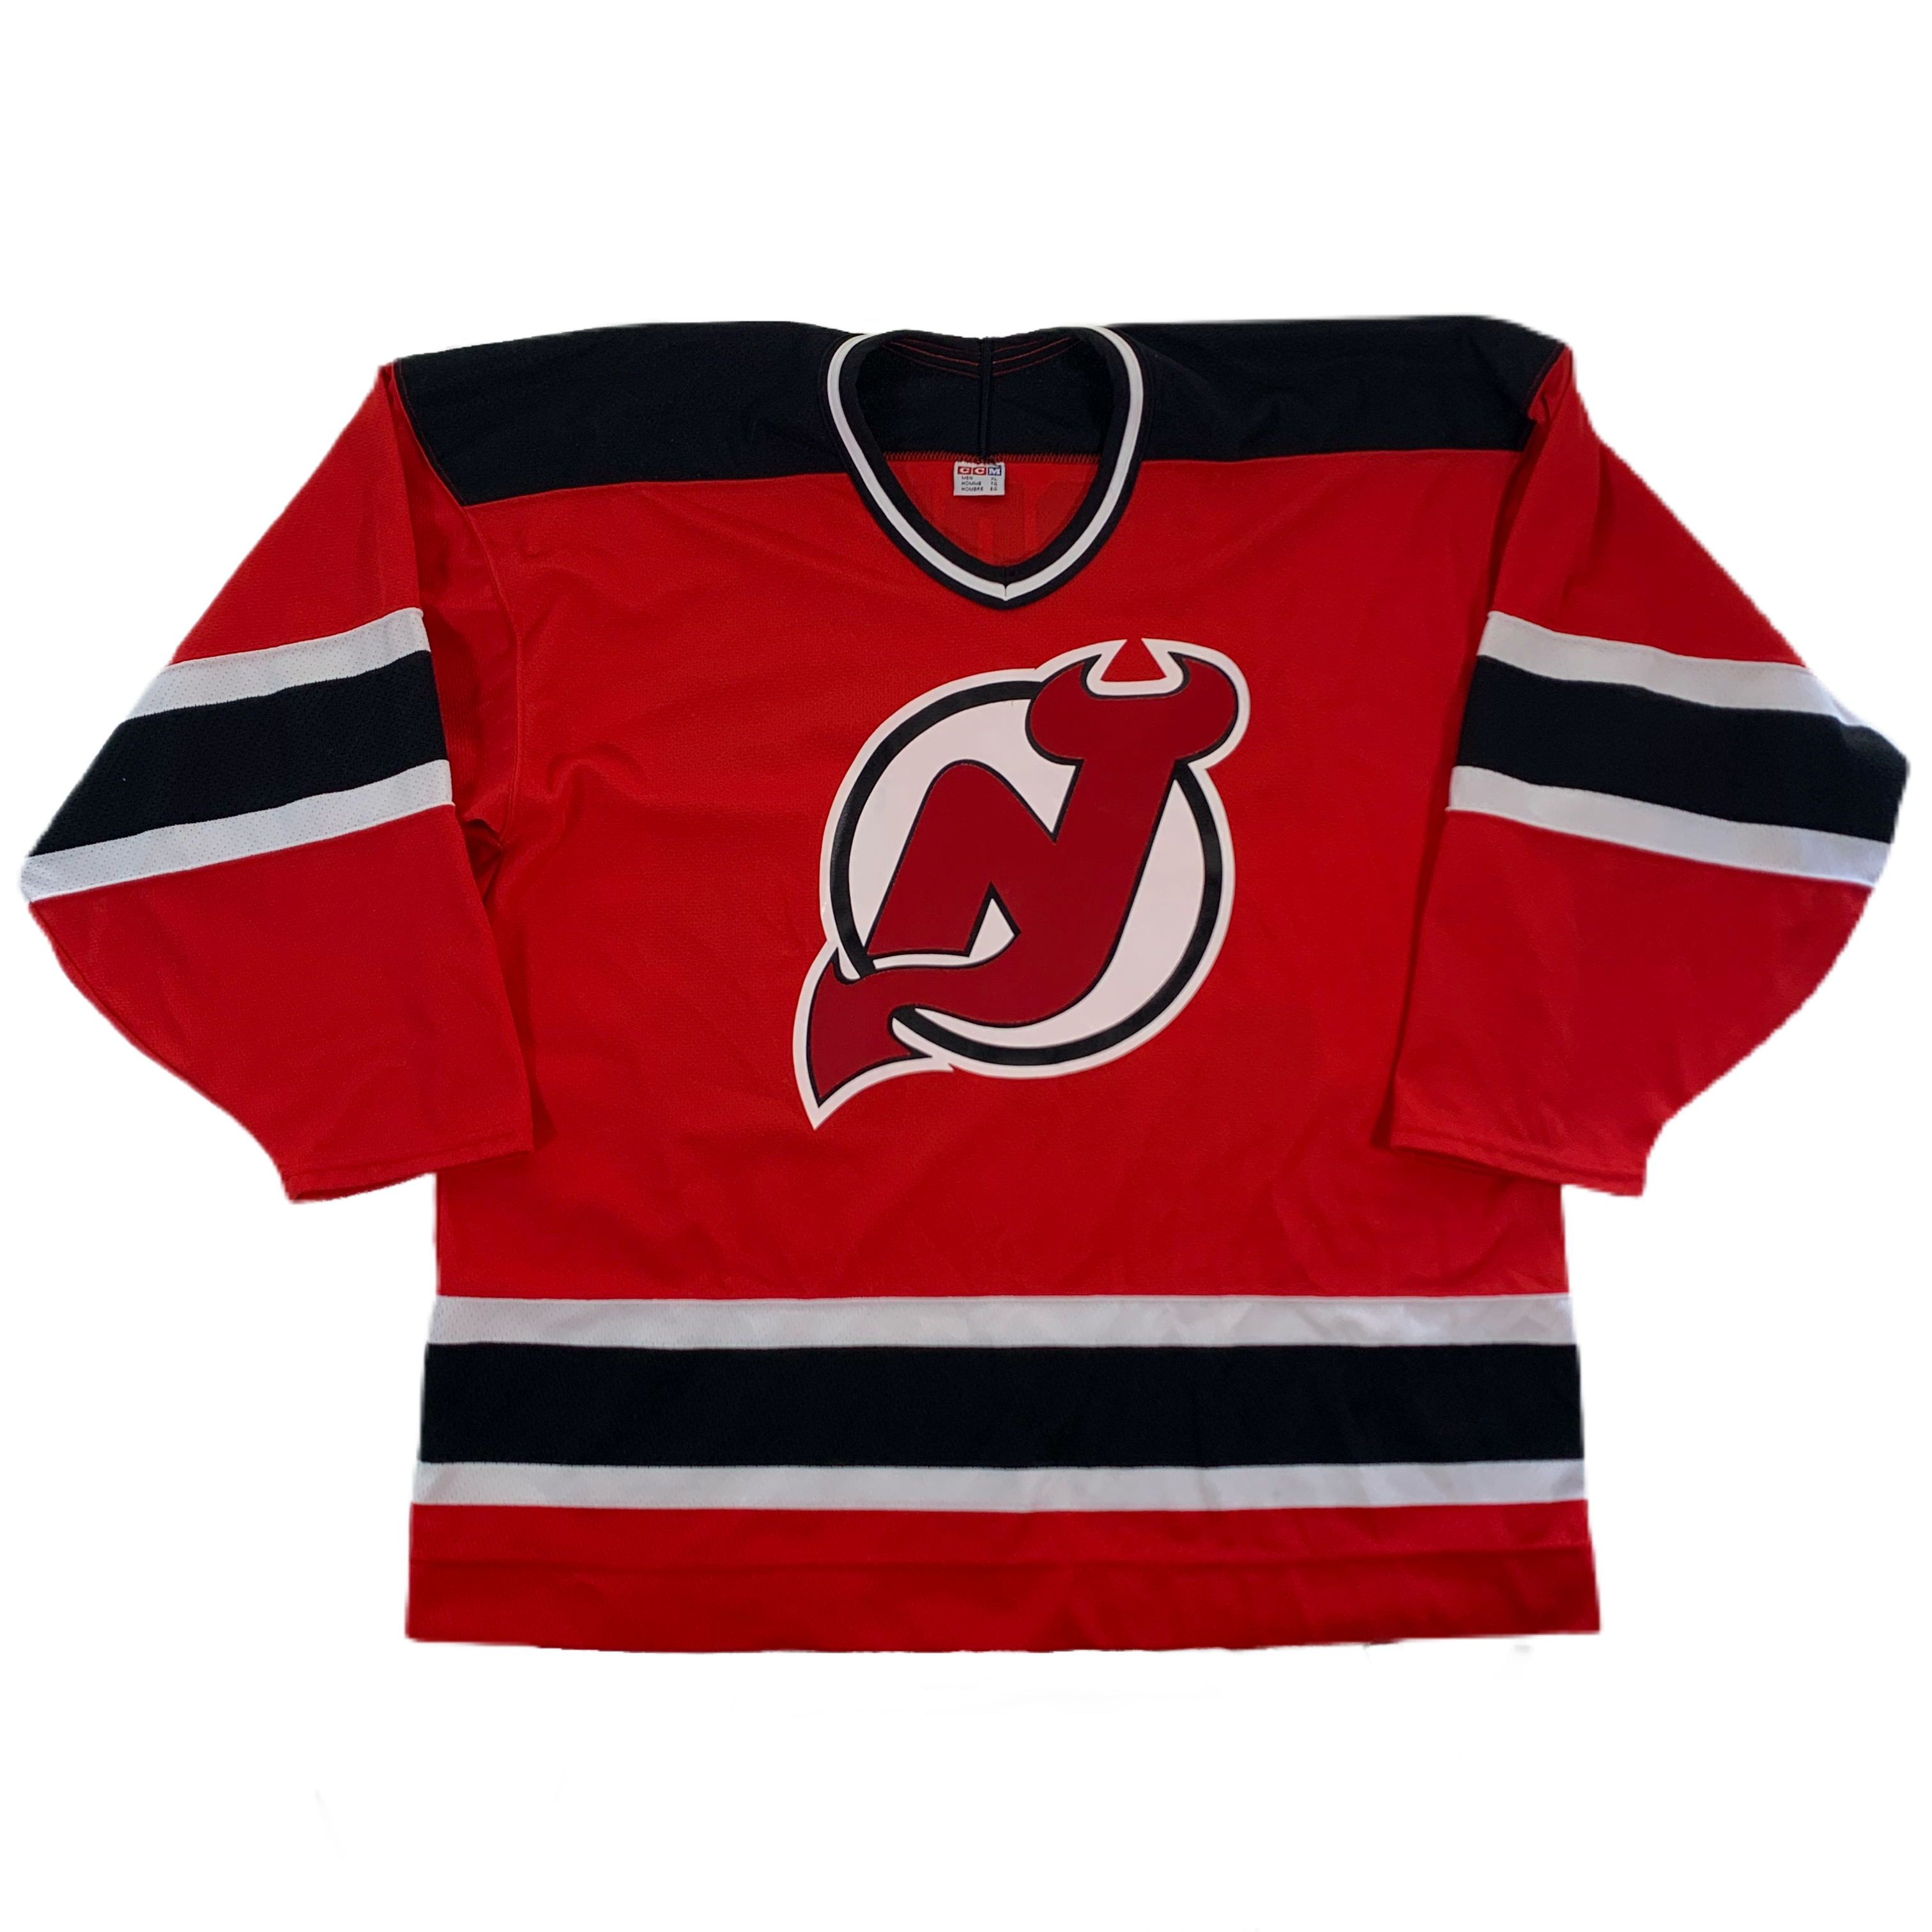 Vintage New Jersey Devils Martin Brodeur “CCM” Jersey